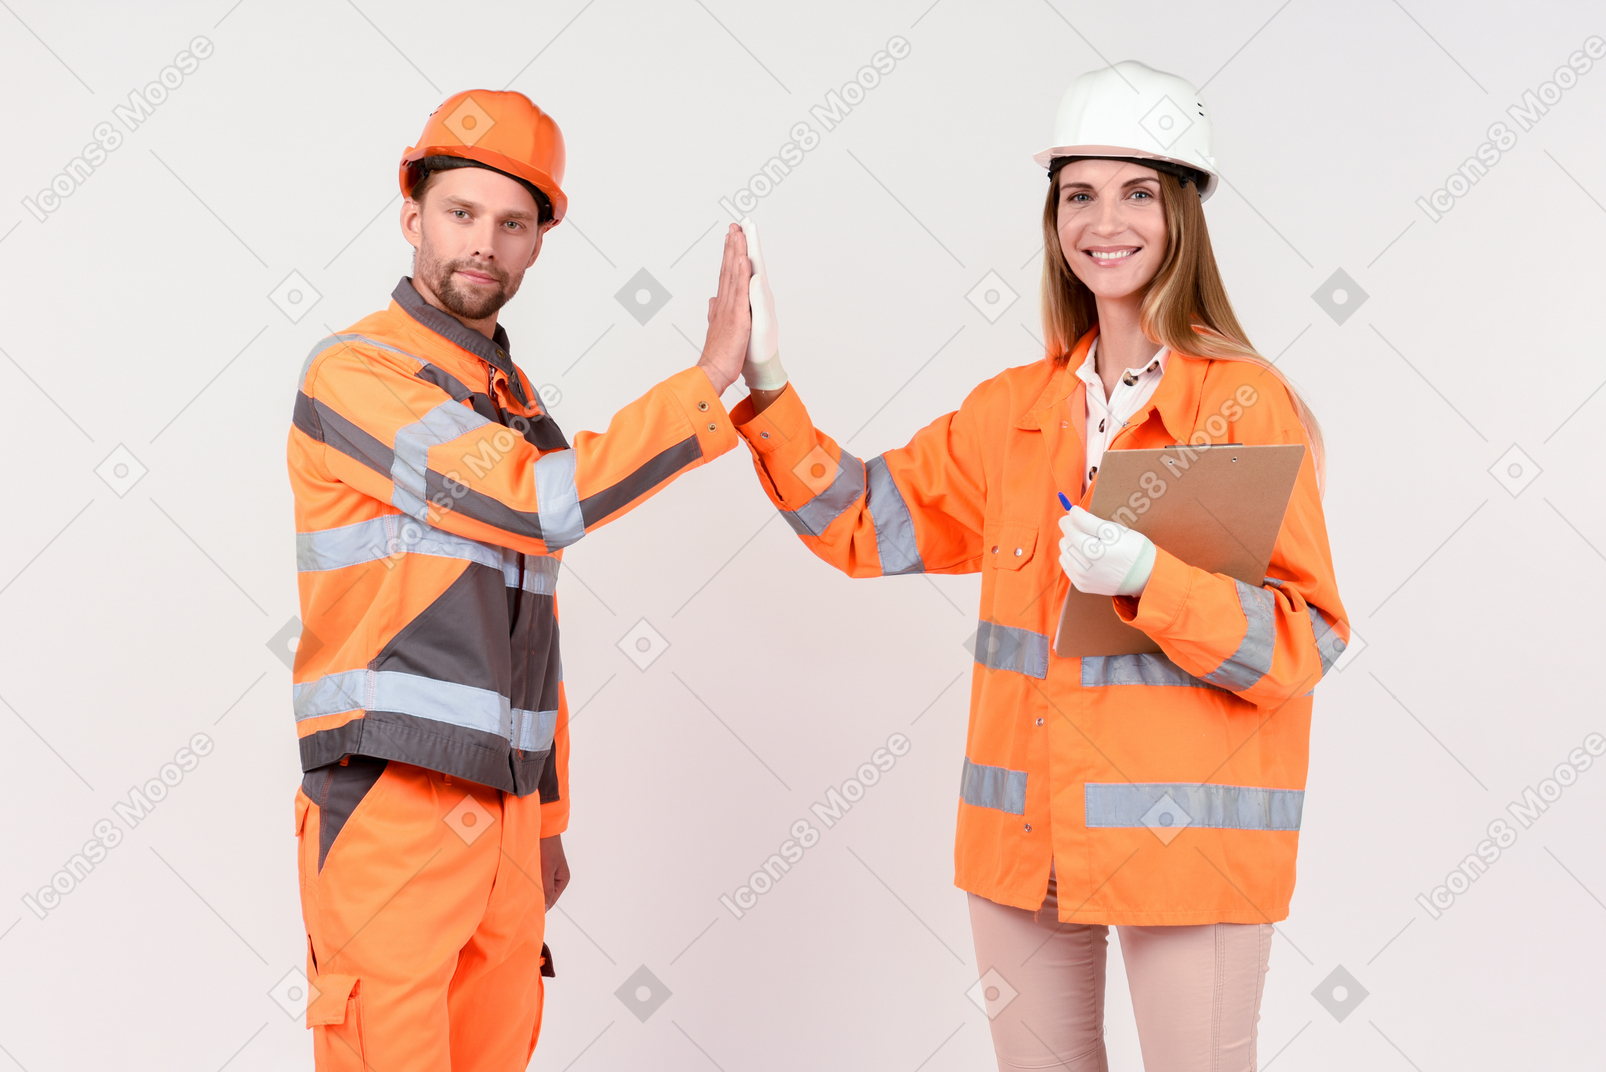 Männliche und weibliche arbeiter geben high five